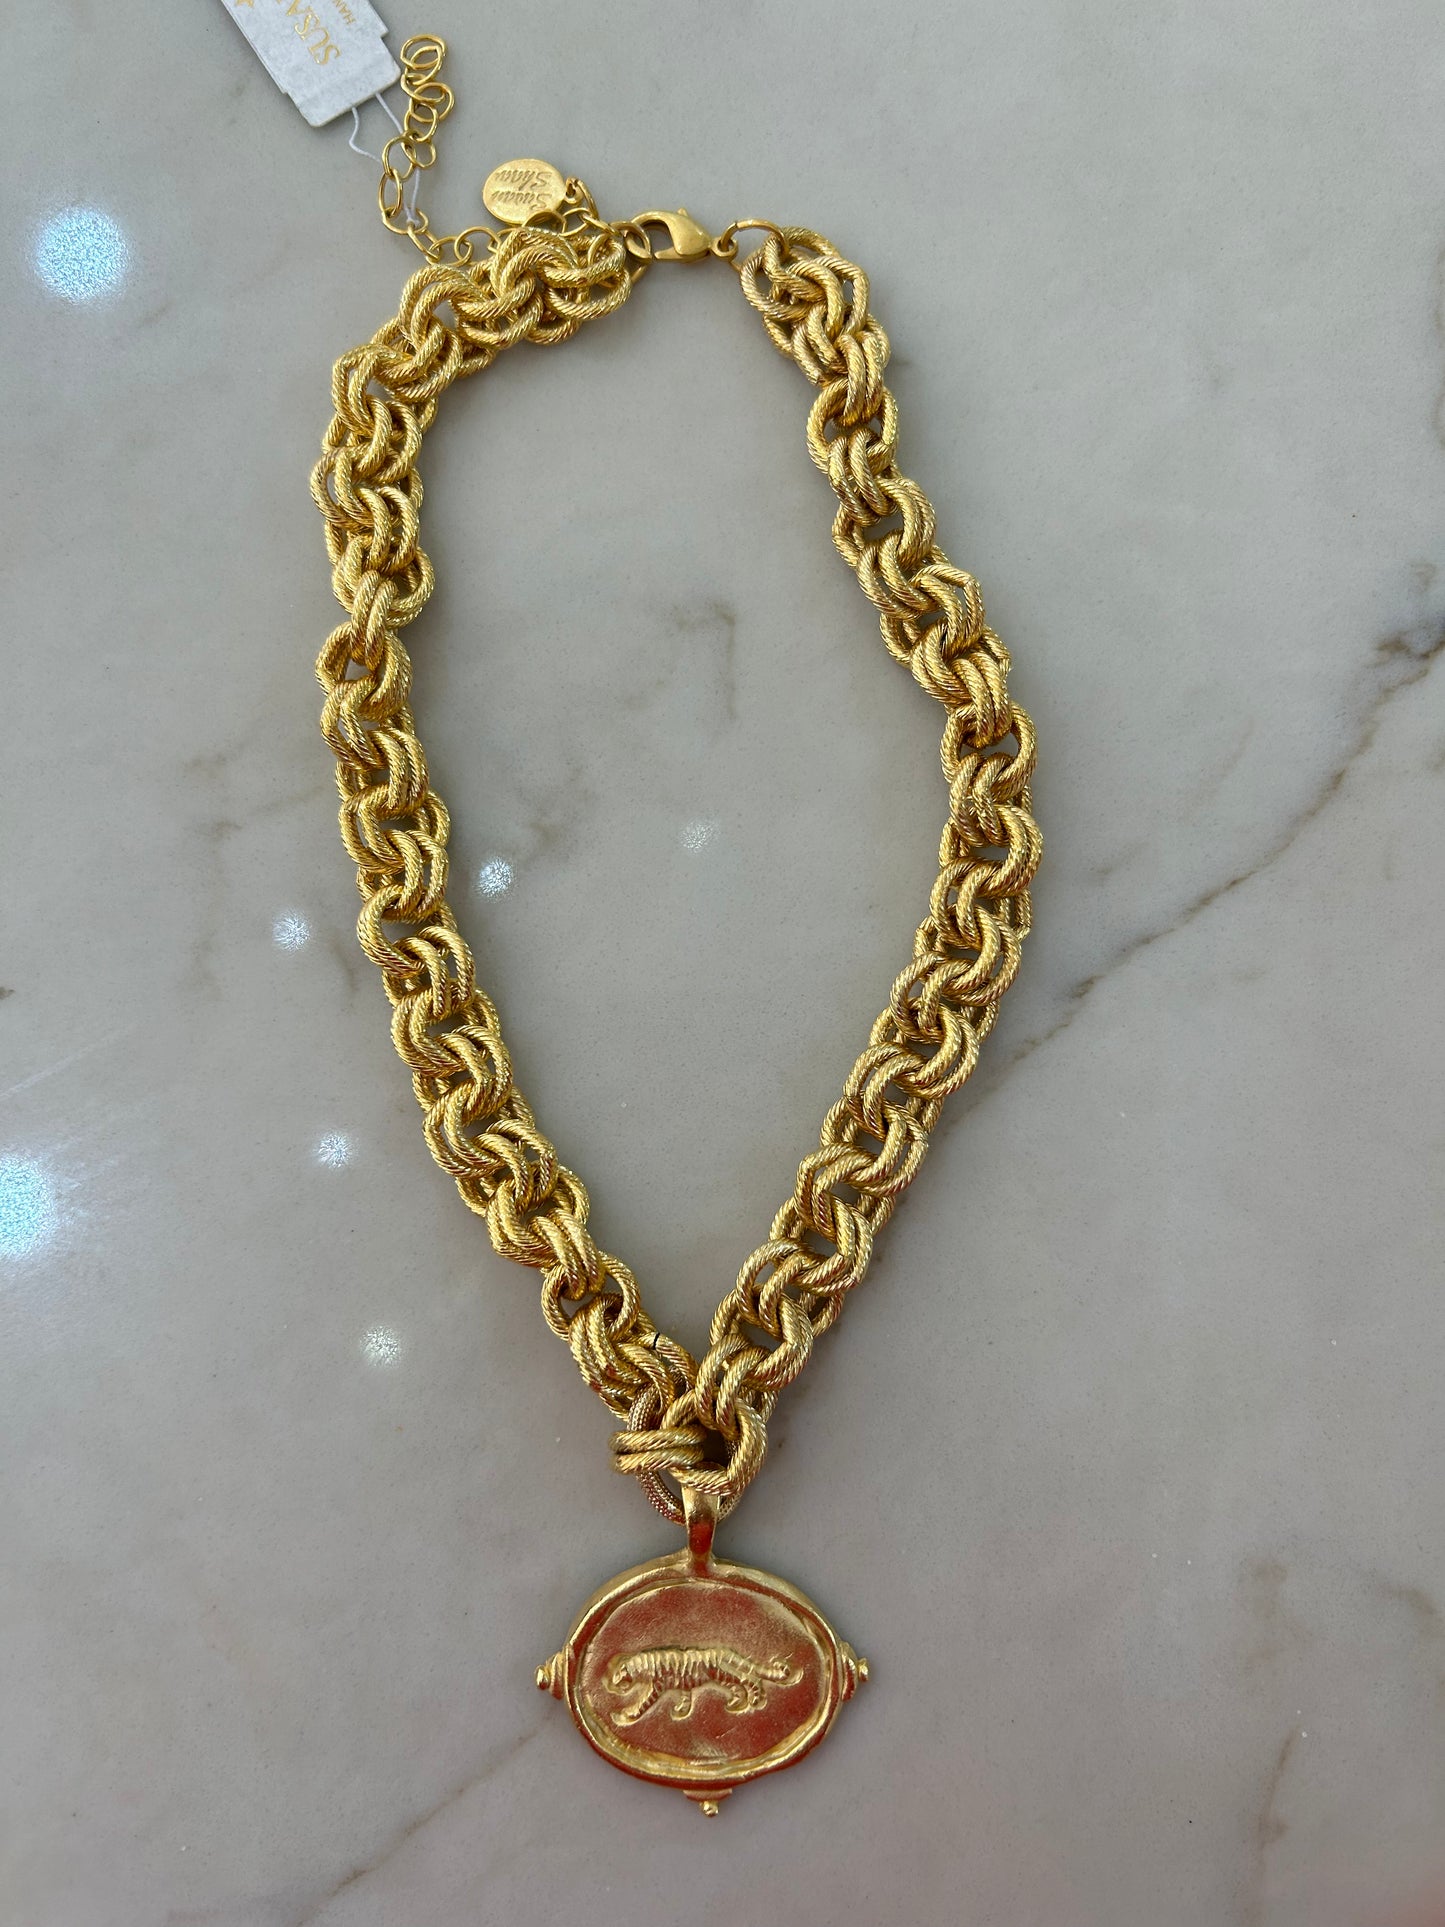 Susan Shaw Gold Tiger Italian Intaglio Necklace